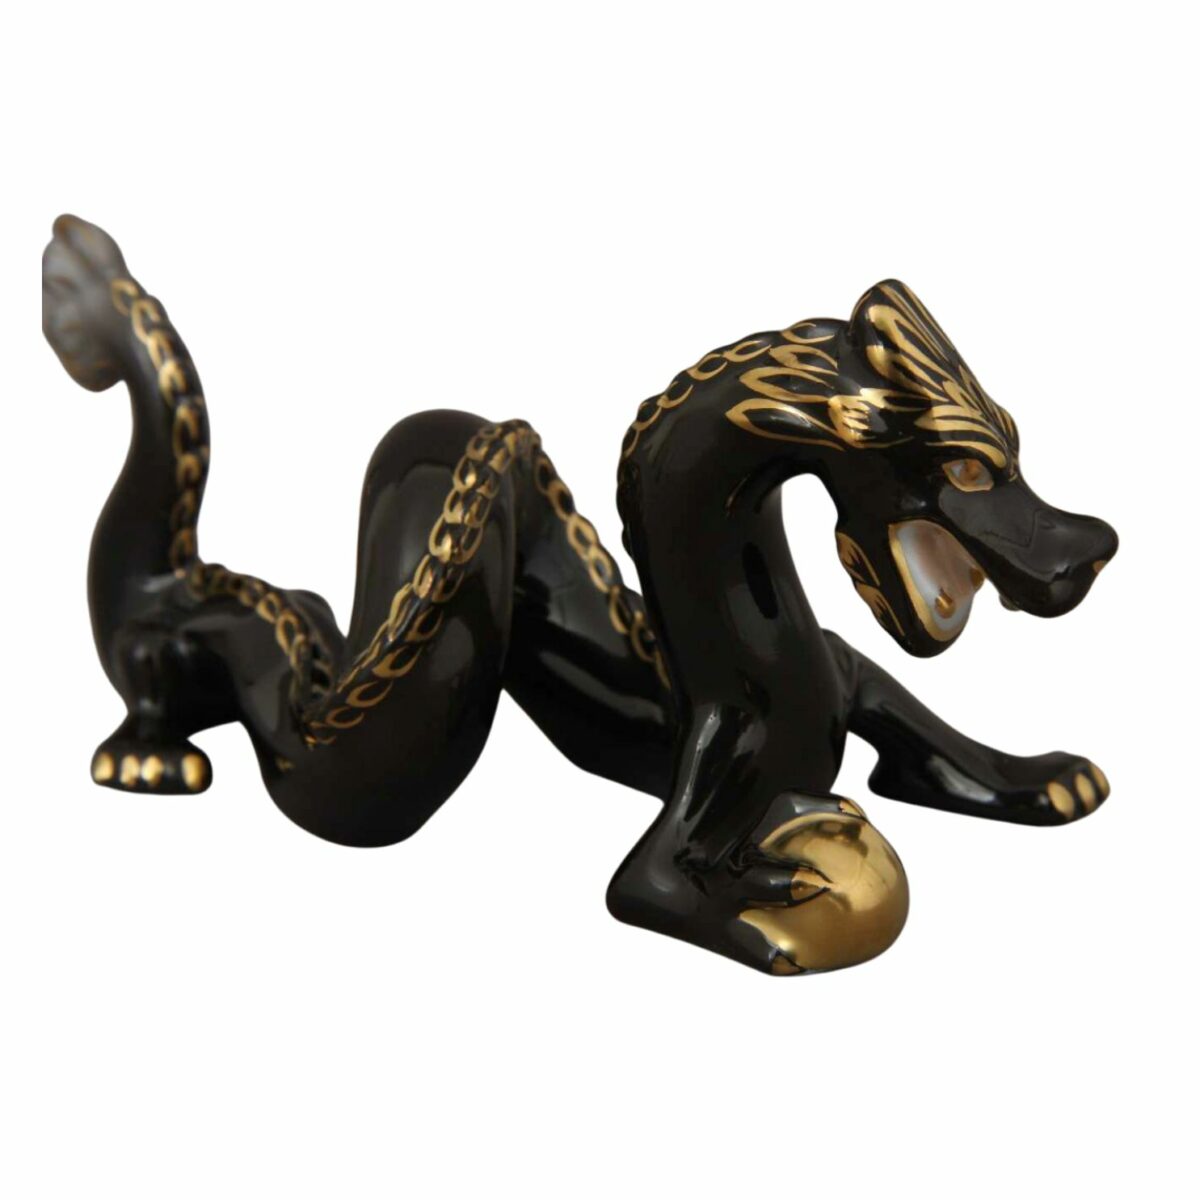 Herend-Porcelain-Dragon-Figurine-Black-15070-0-00-V-N2